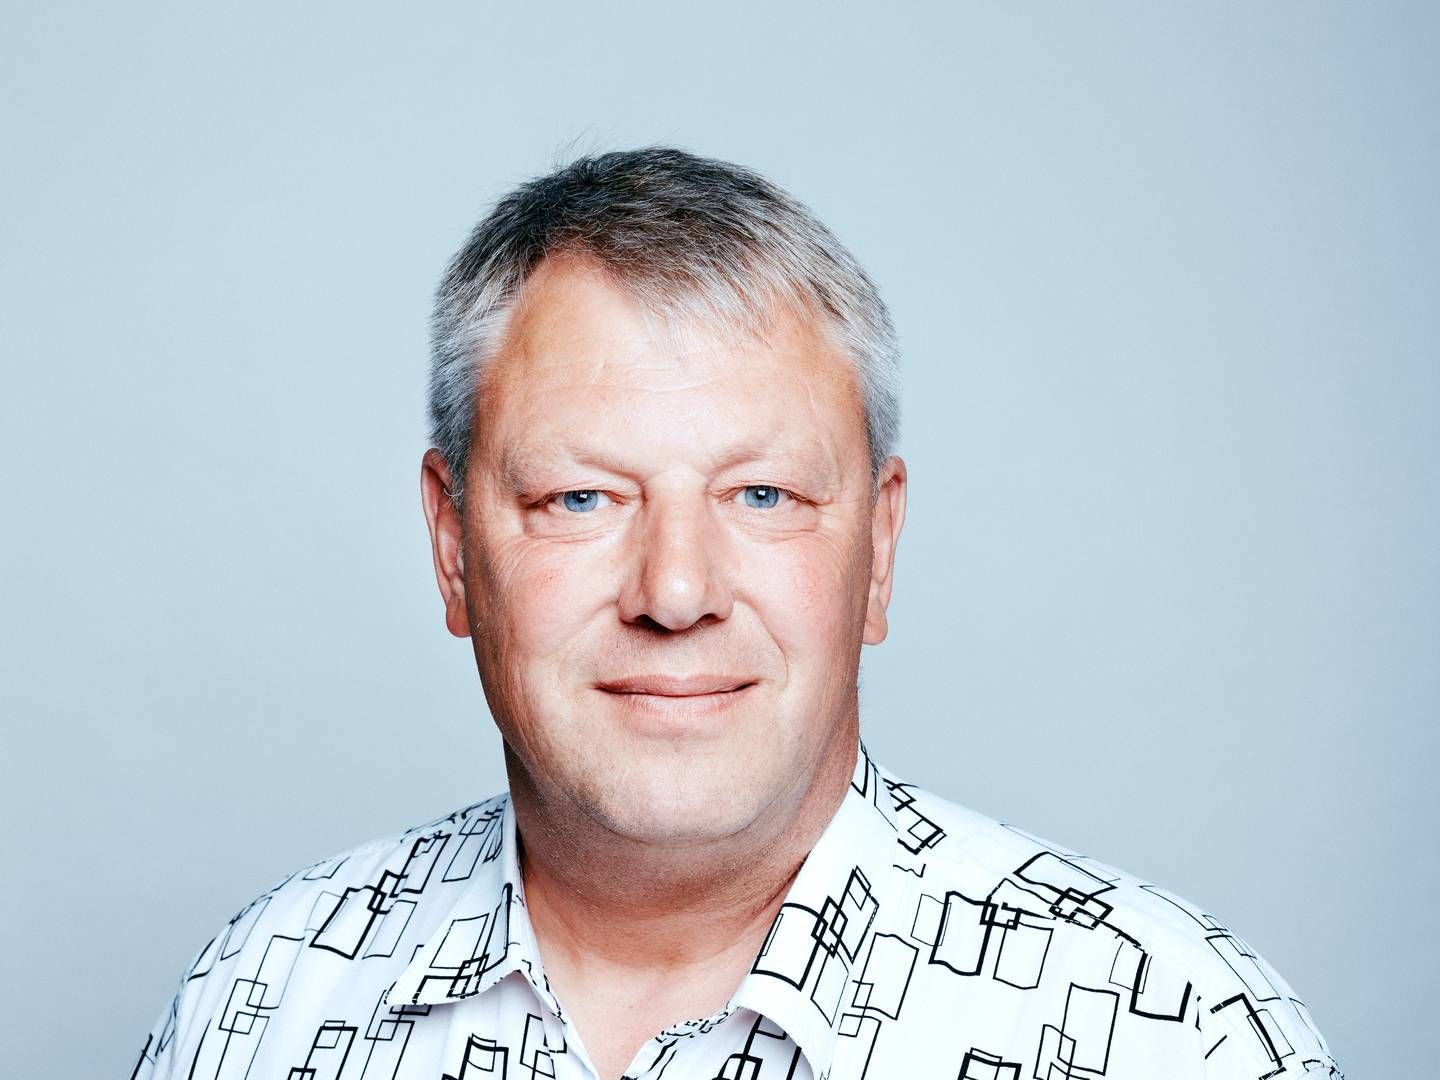 Søren Rasmussen har tjent sin formue på planteavl og energiselskabet Eurowind Energy og som medejer af blandt andet Frandsbjerg Group og Frandsbjerg Invest, hvorigennem han har investeret i landbrug. | Foto: Eurowind